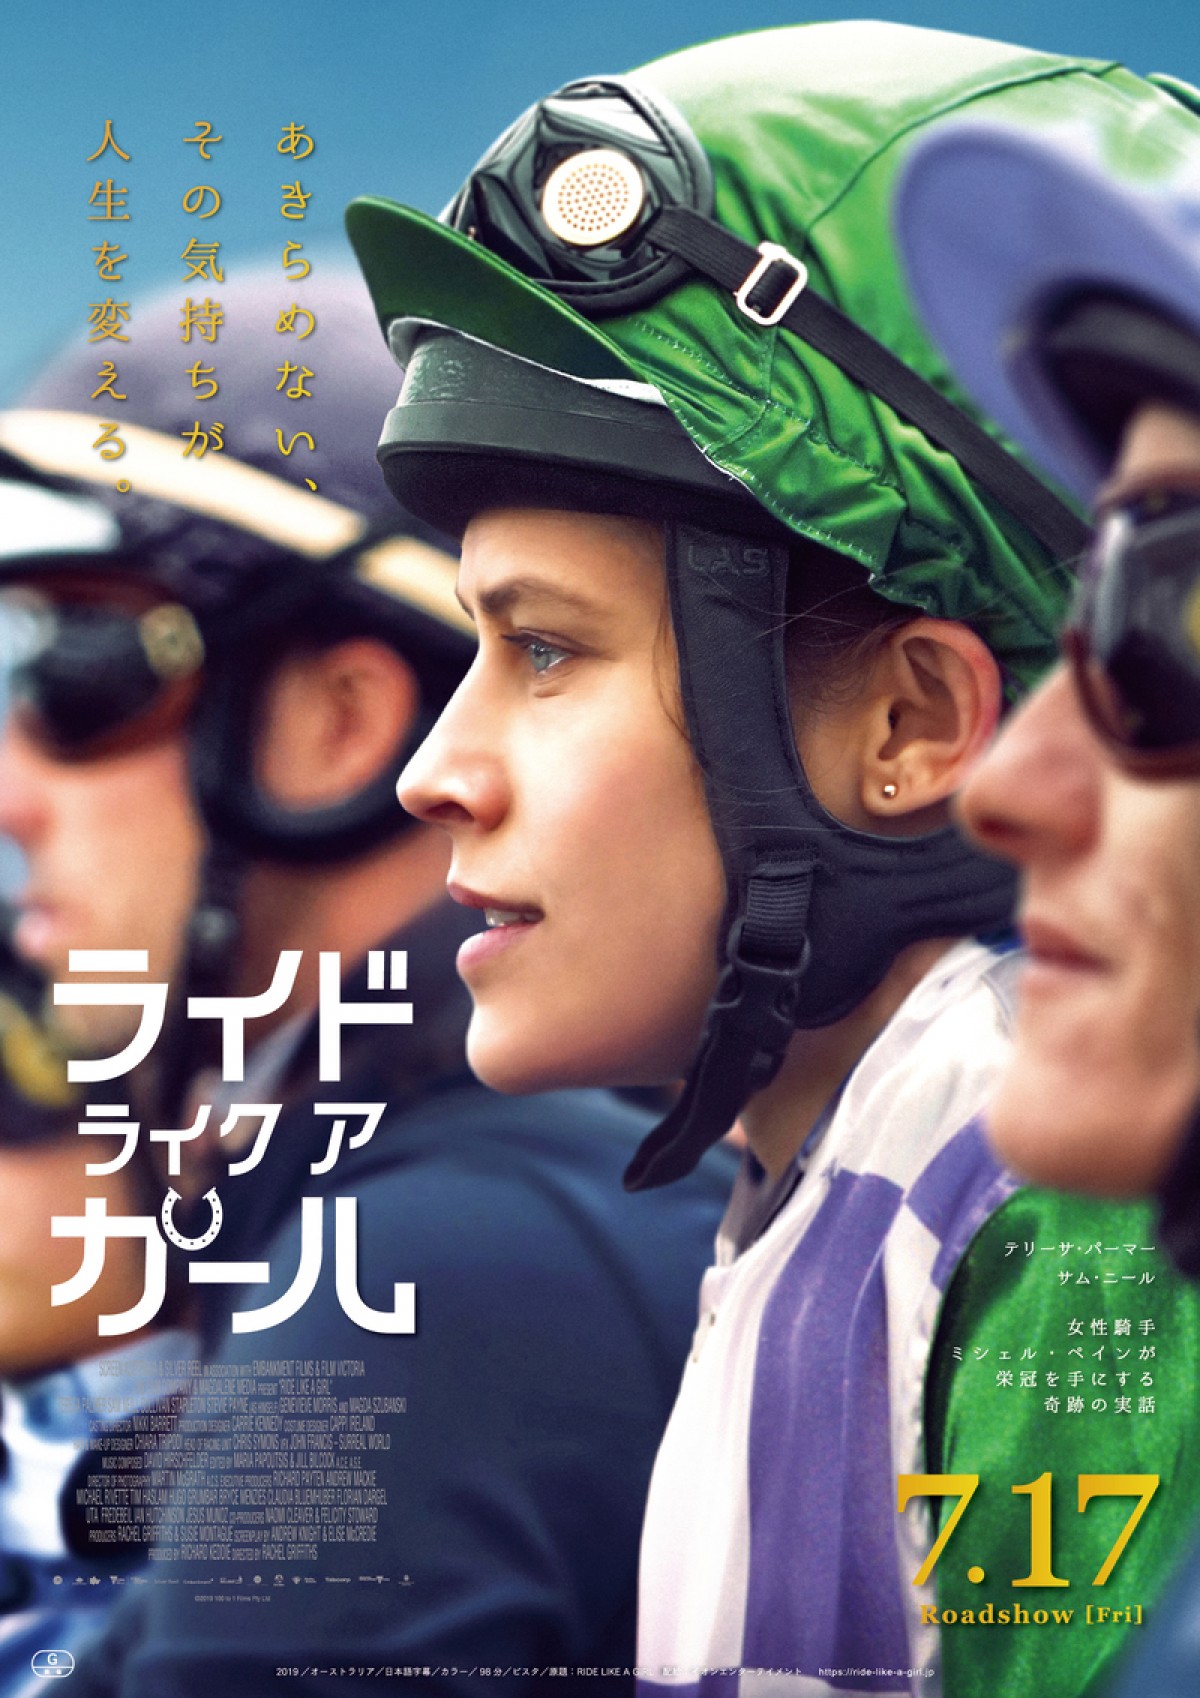 オーストラリア競馬の栄冠を手にした女性騎手の半生を描く『ライド・ライク・ア・ガール』予告